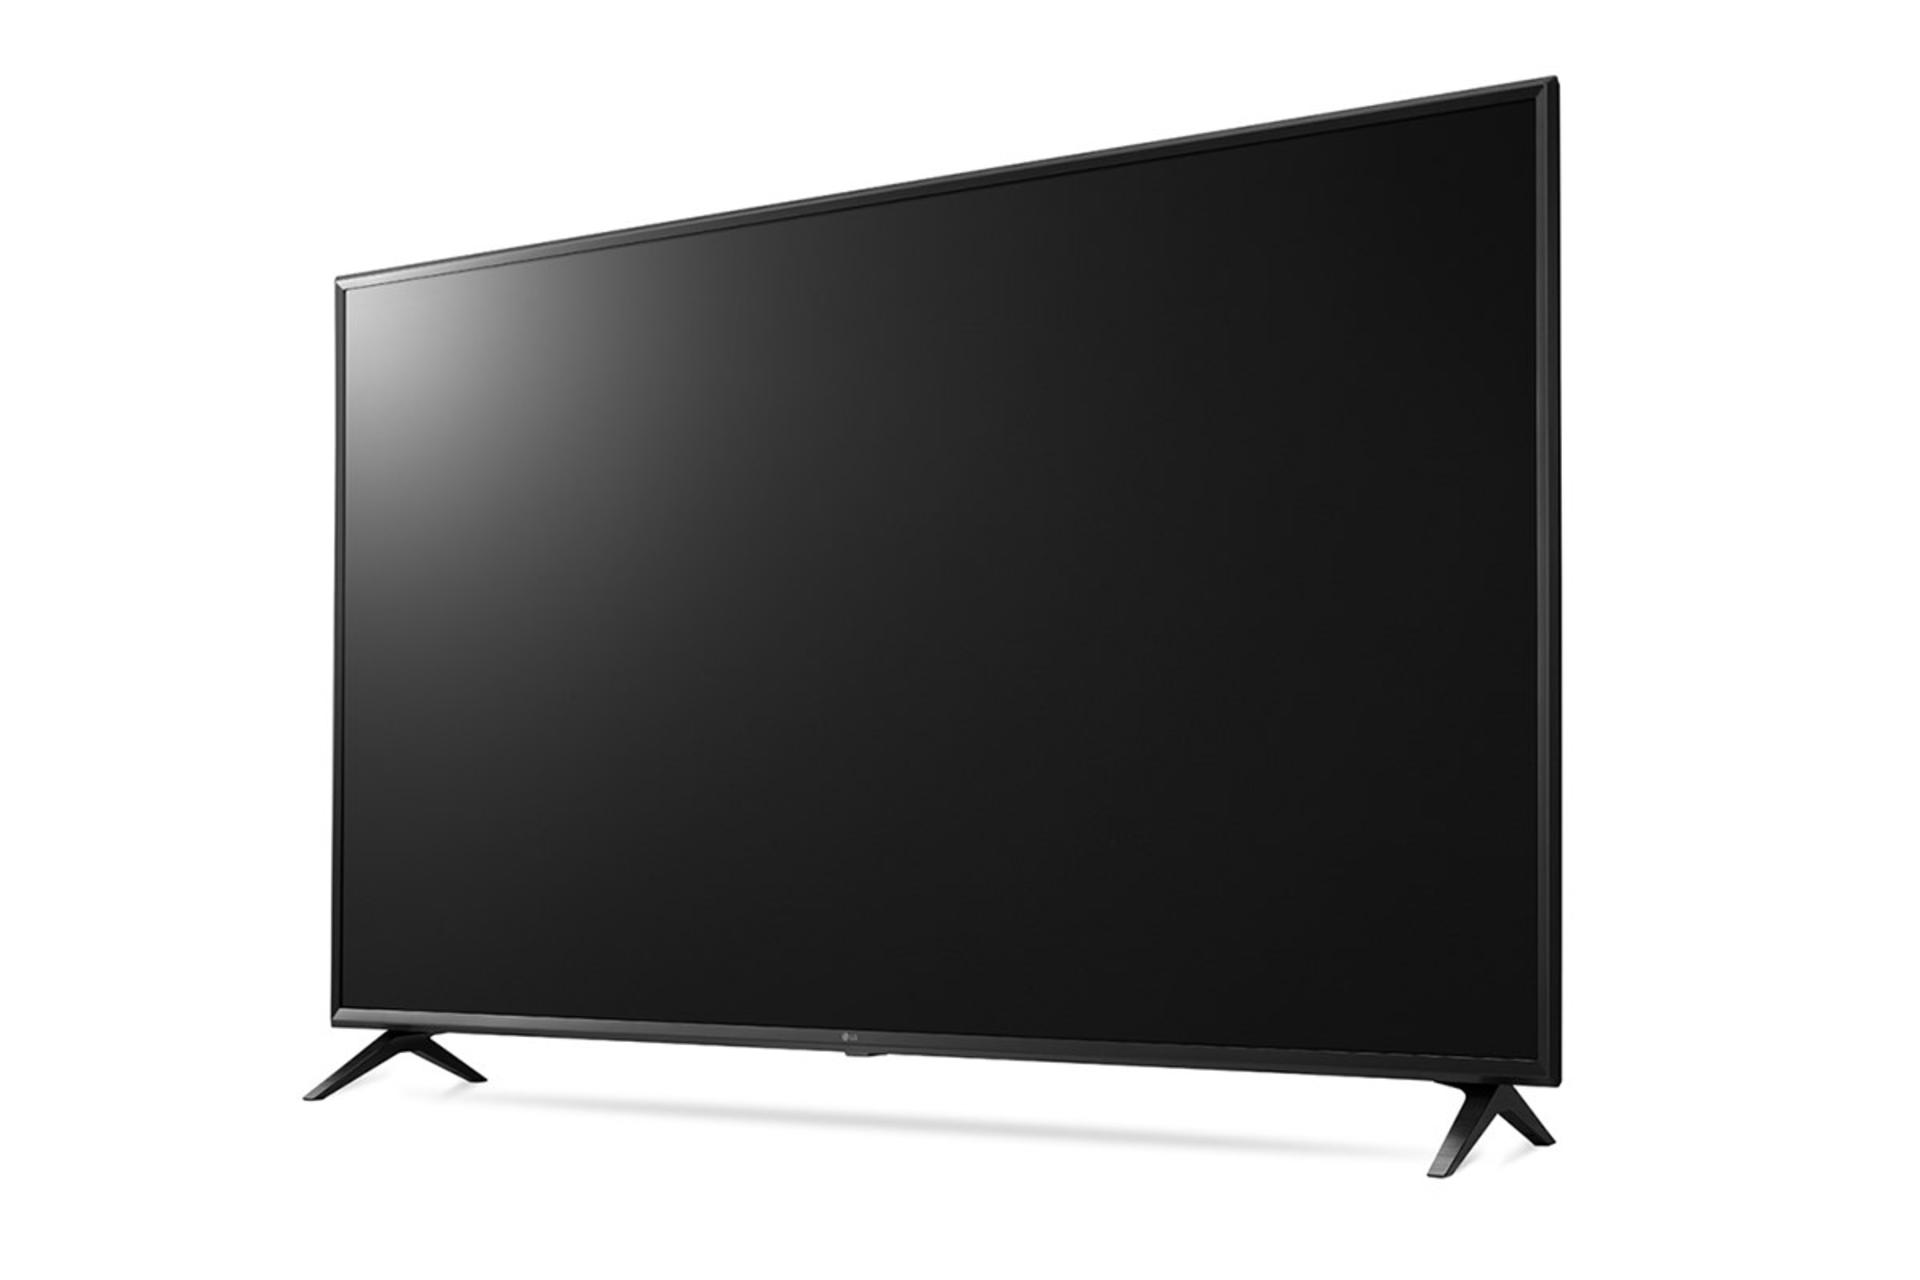 نمای نیم رخ تلویزیون ال جی UK6300 مدل 55 اینچ با صفحه خاموش و رنگ مشکی